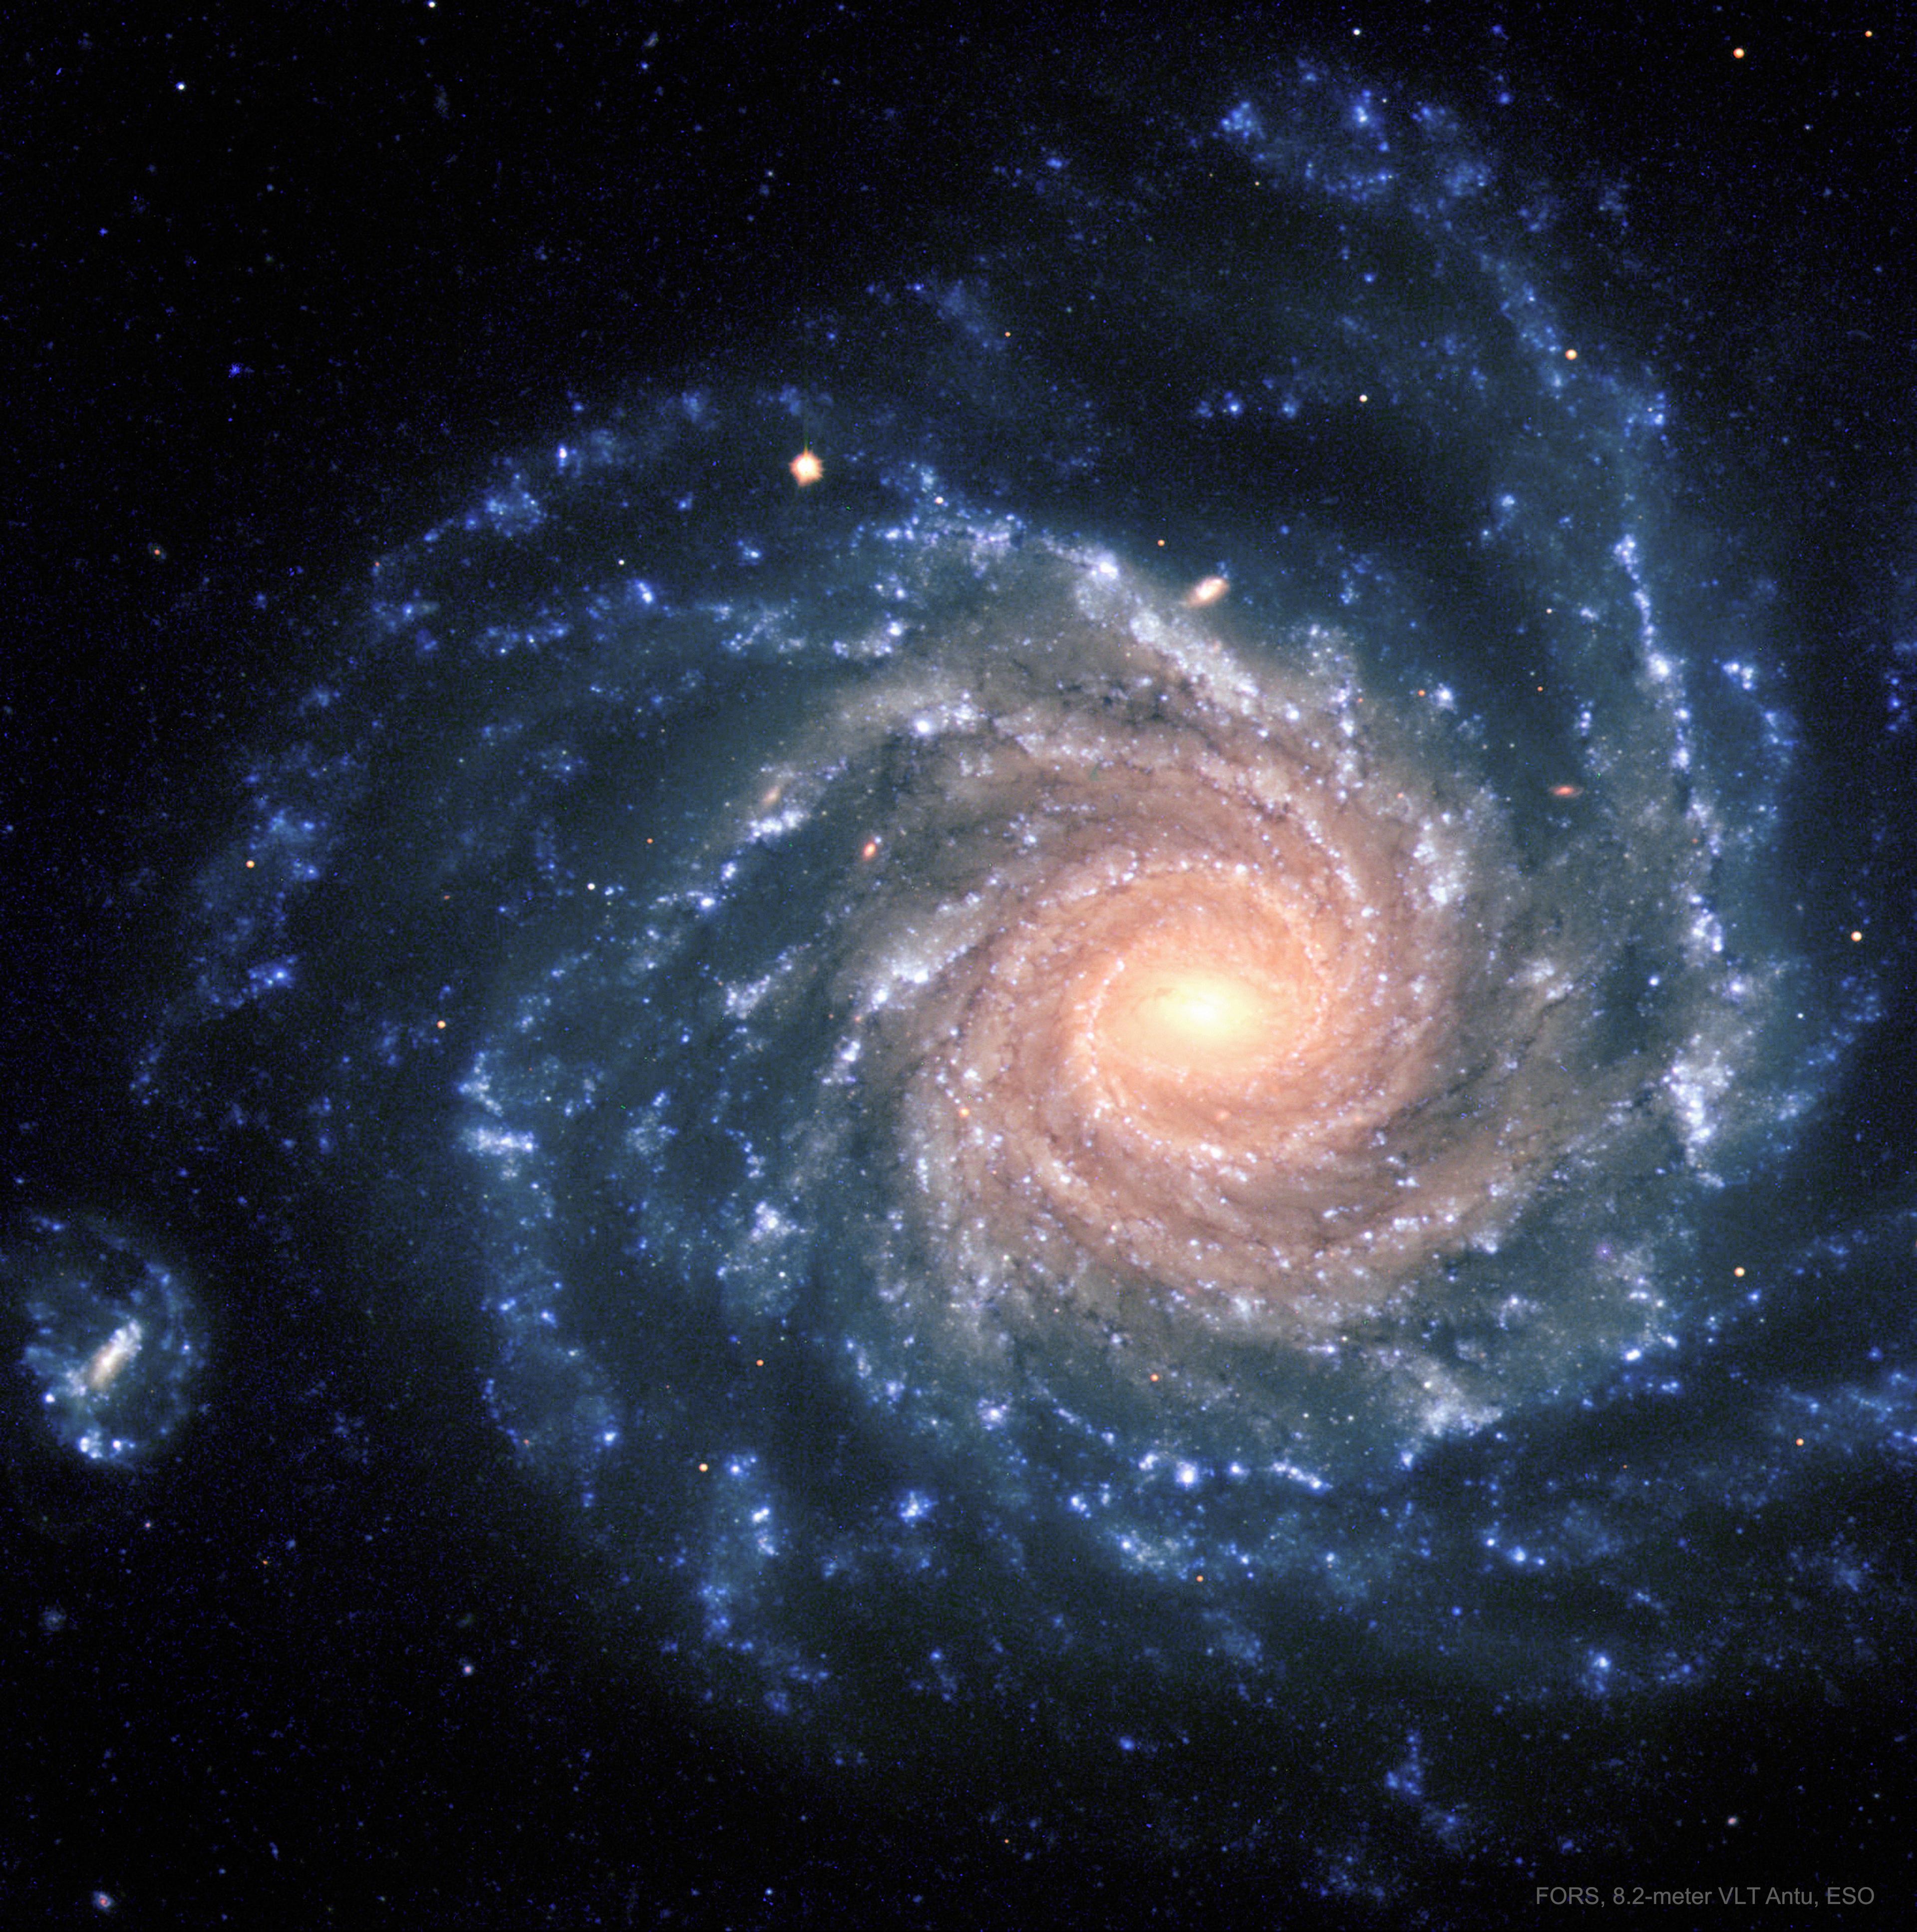 تظهر مجرّة حلزونيّة بأذرع حلزونيّة زرقاء كبيرة ومركزٍ يبدو أكثر صُفرةً.